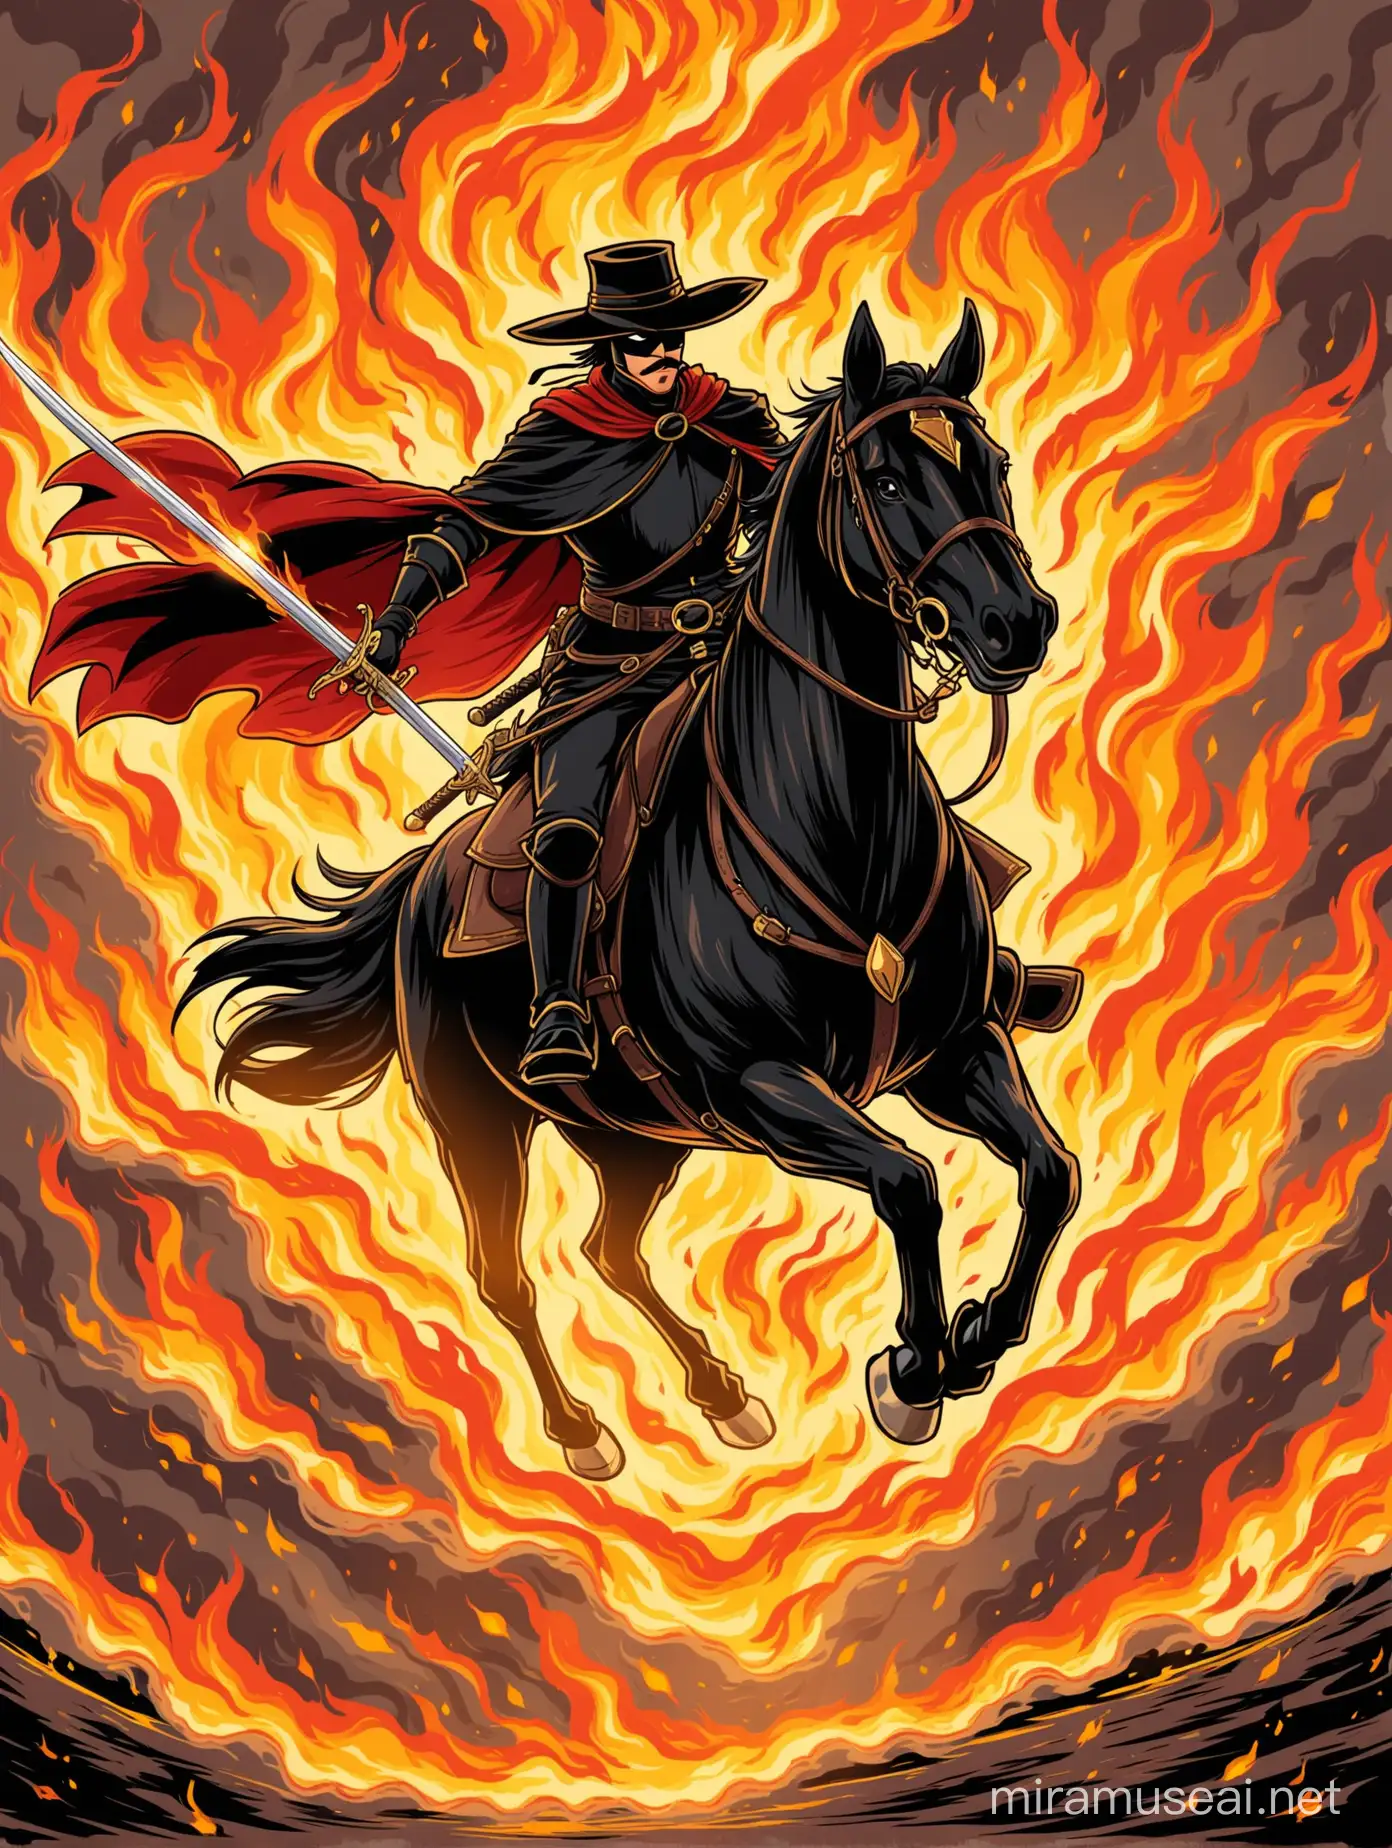 Zorro naik kuda sambil pegang pedang mengejar musuh, background penuh asap dan api, kartun 2D